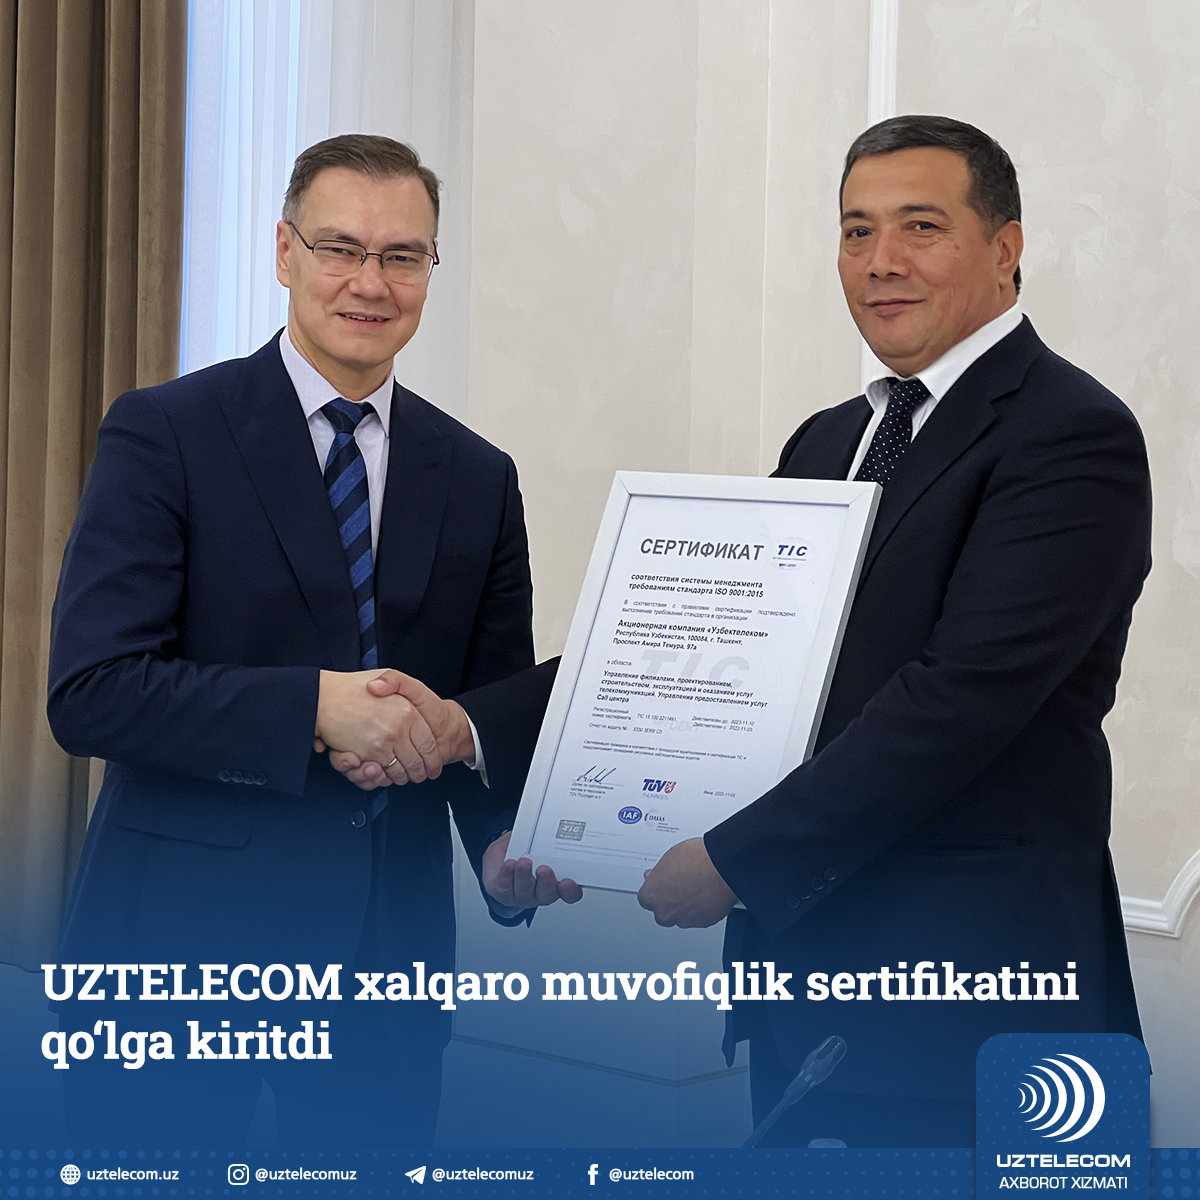 UZTELECOM получил международный сертификат соответствия системы менеджмента